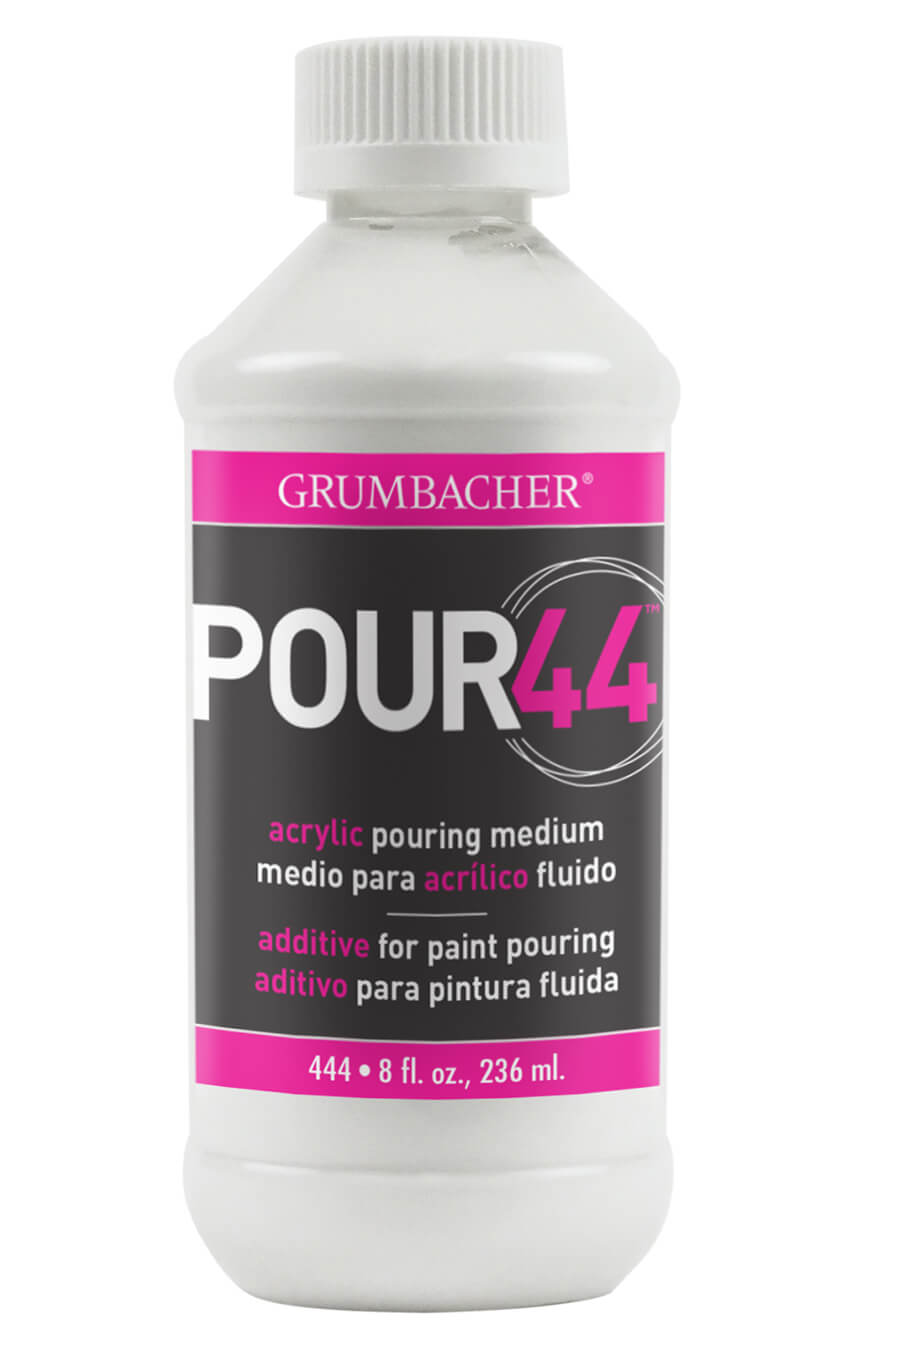 Grumbacher Pour44 Medium, Acrylic Pouring Medium, 1 Gal